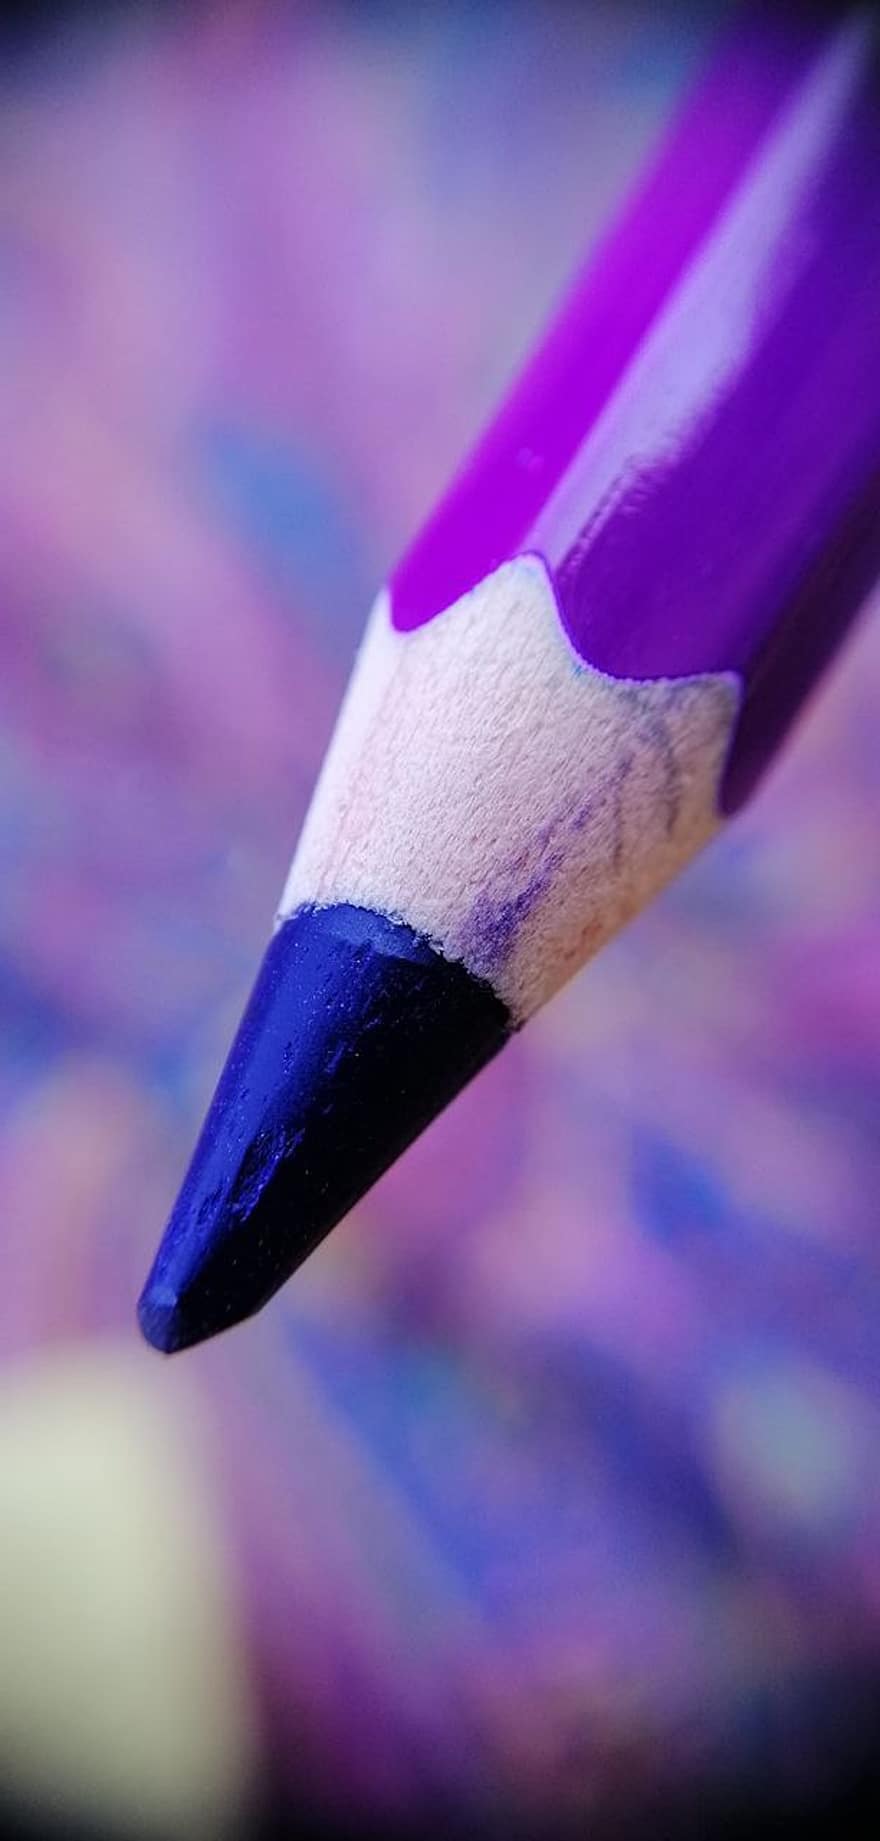 ดินสอสี, ดินสอสีม่วง, ดินสอสีสีม่วง, ม่วง, ศิลปะและงานฝีมือ, อุปกรณ์ศิลปะ, วัสดุสี, การระบายสี, การถ่ายภาพมาโคร, โบเก้